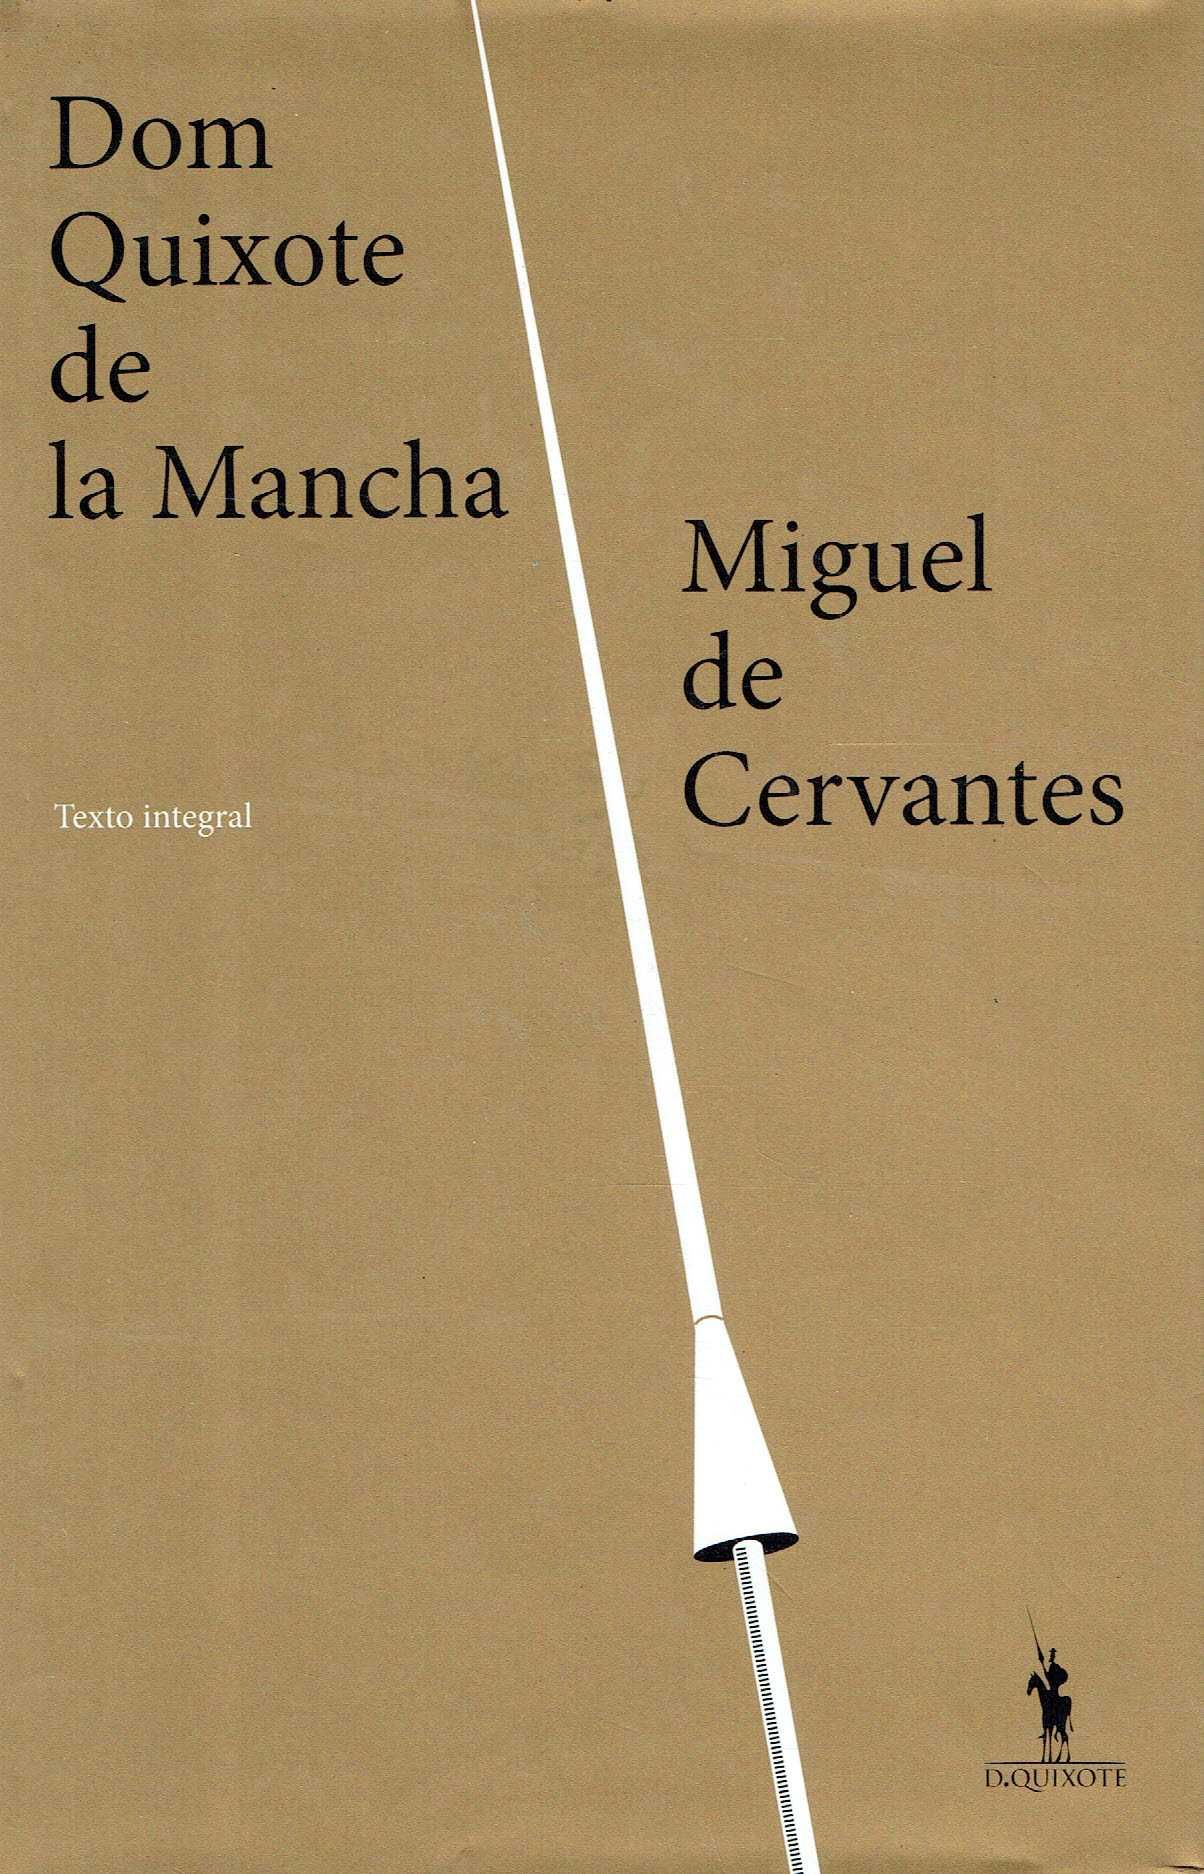 9614

Dom Quixote de La Mancha
de Miguel de Cervantes